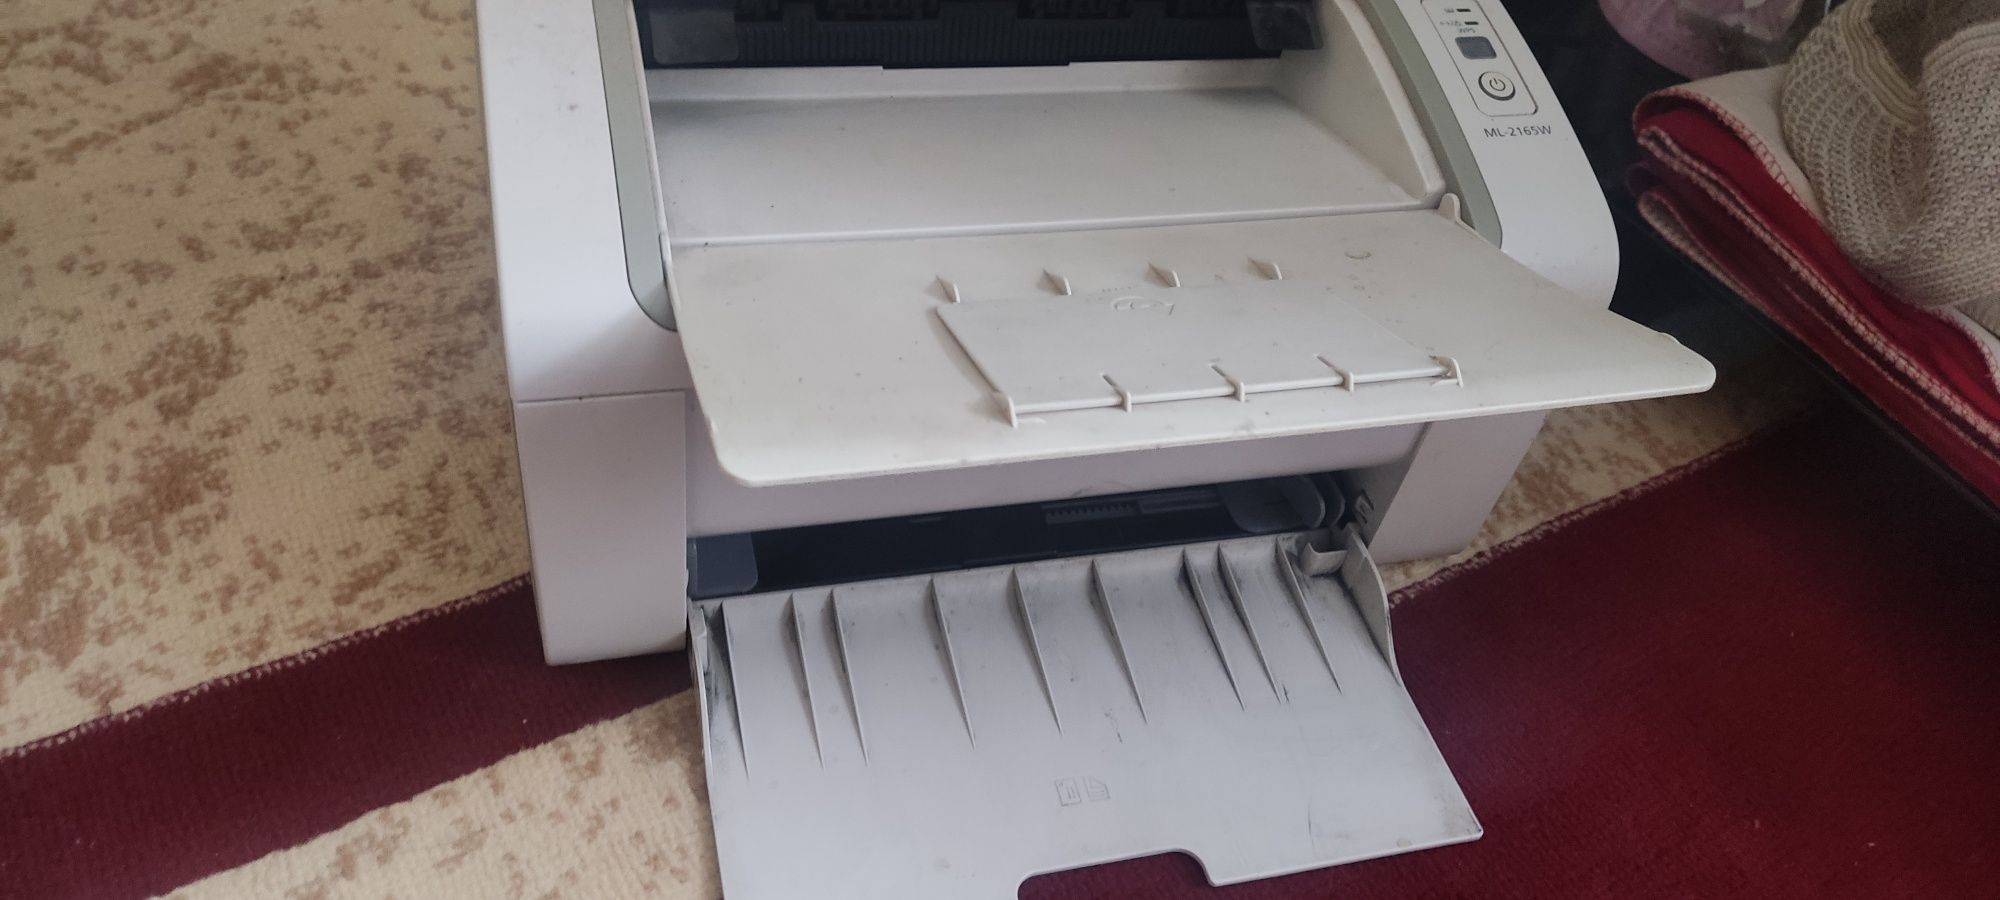 Принтер для компютера